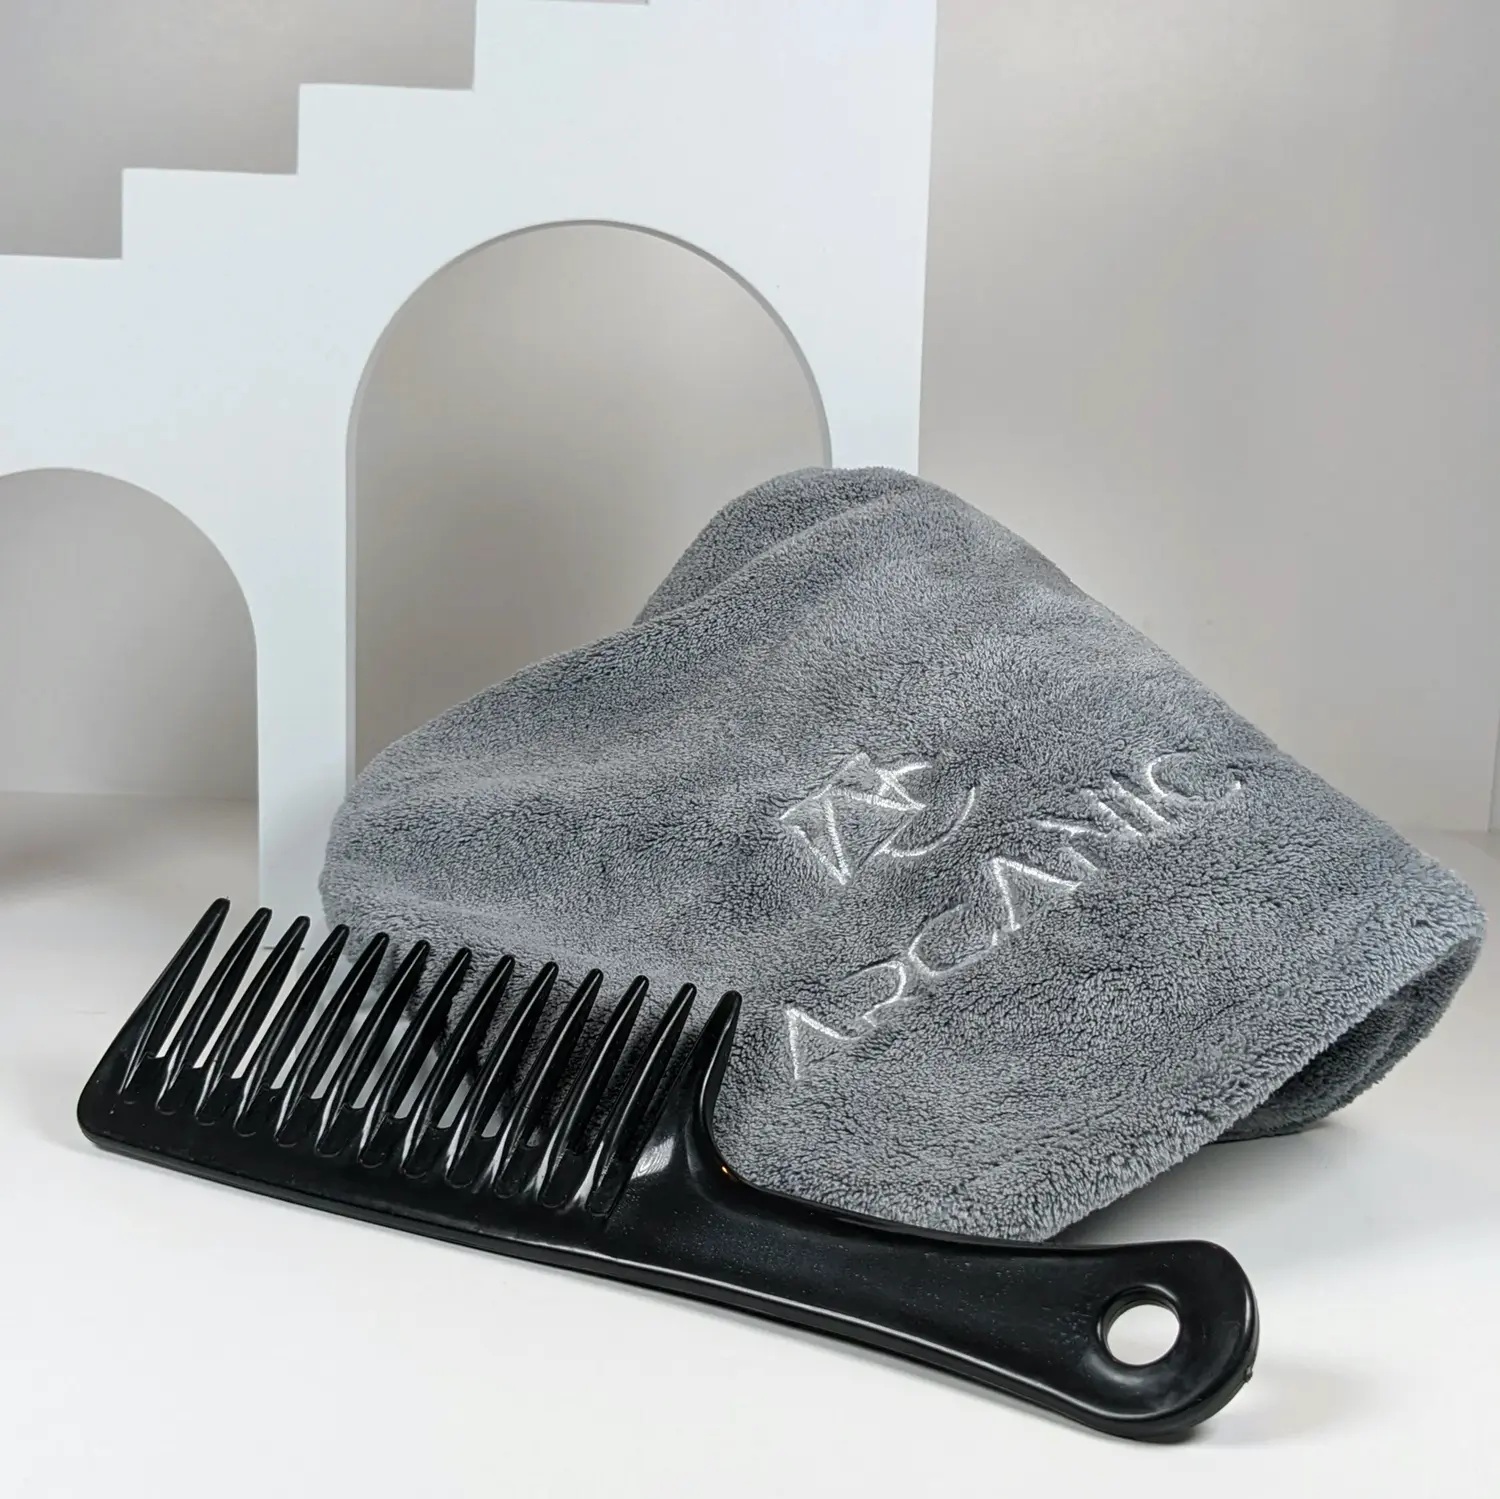 Serviette Flex DUO Arcanic boutique Hair dresser design coiffure outils coiffant